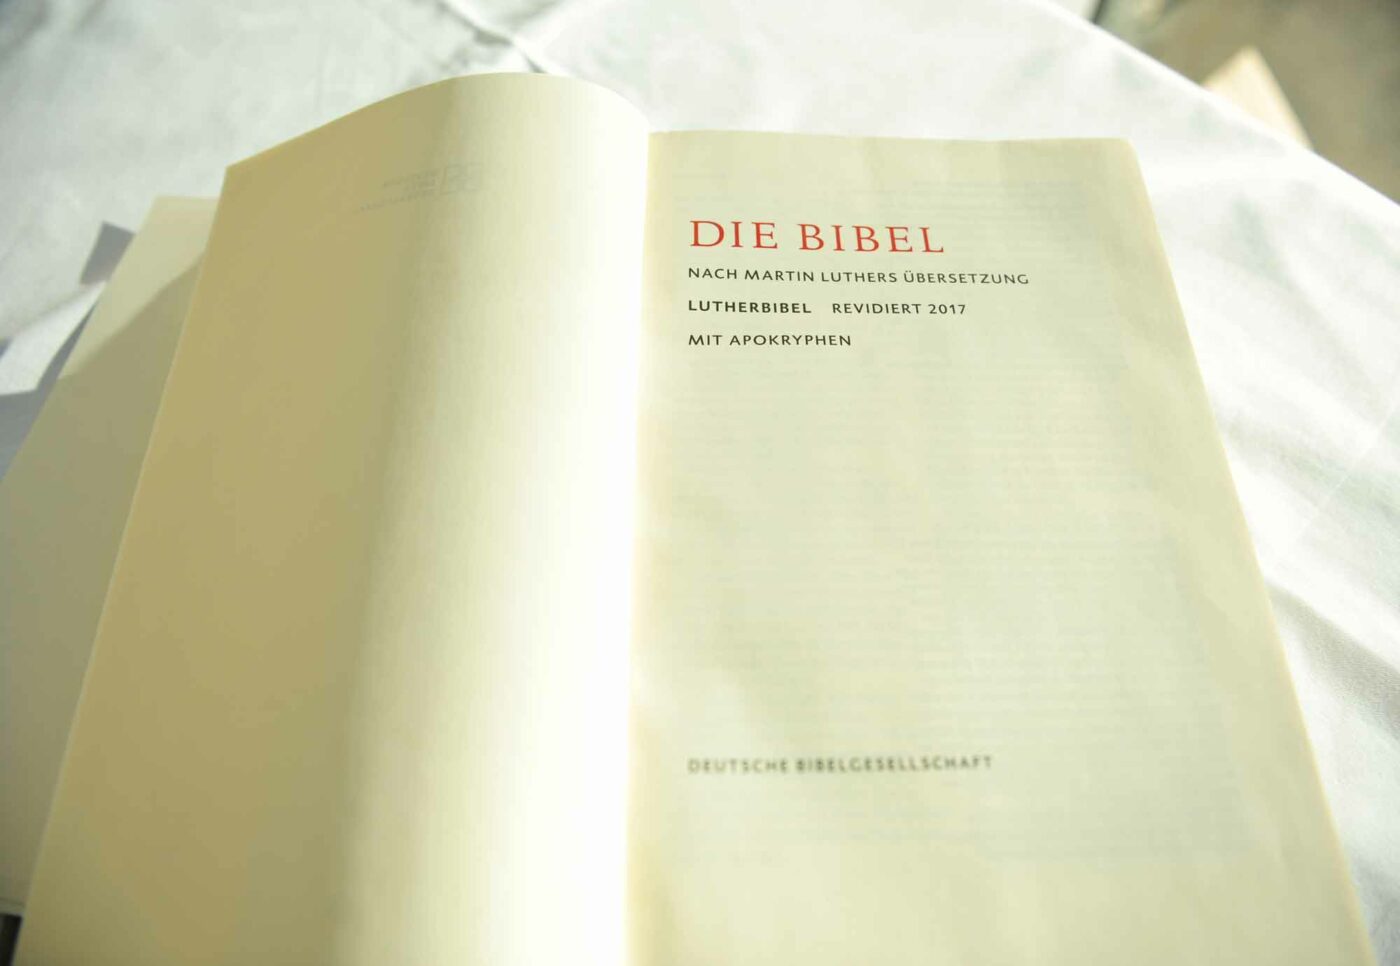 "Der Philosoph Carl Friedrich von Weizsäcker meinte sinngemäß, man könne die Bibel wörtlich nehmen oder ernst. Beides zugleich gehe nicht." Foto: epd/Uschmann